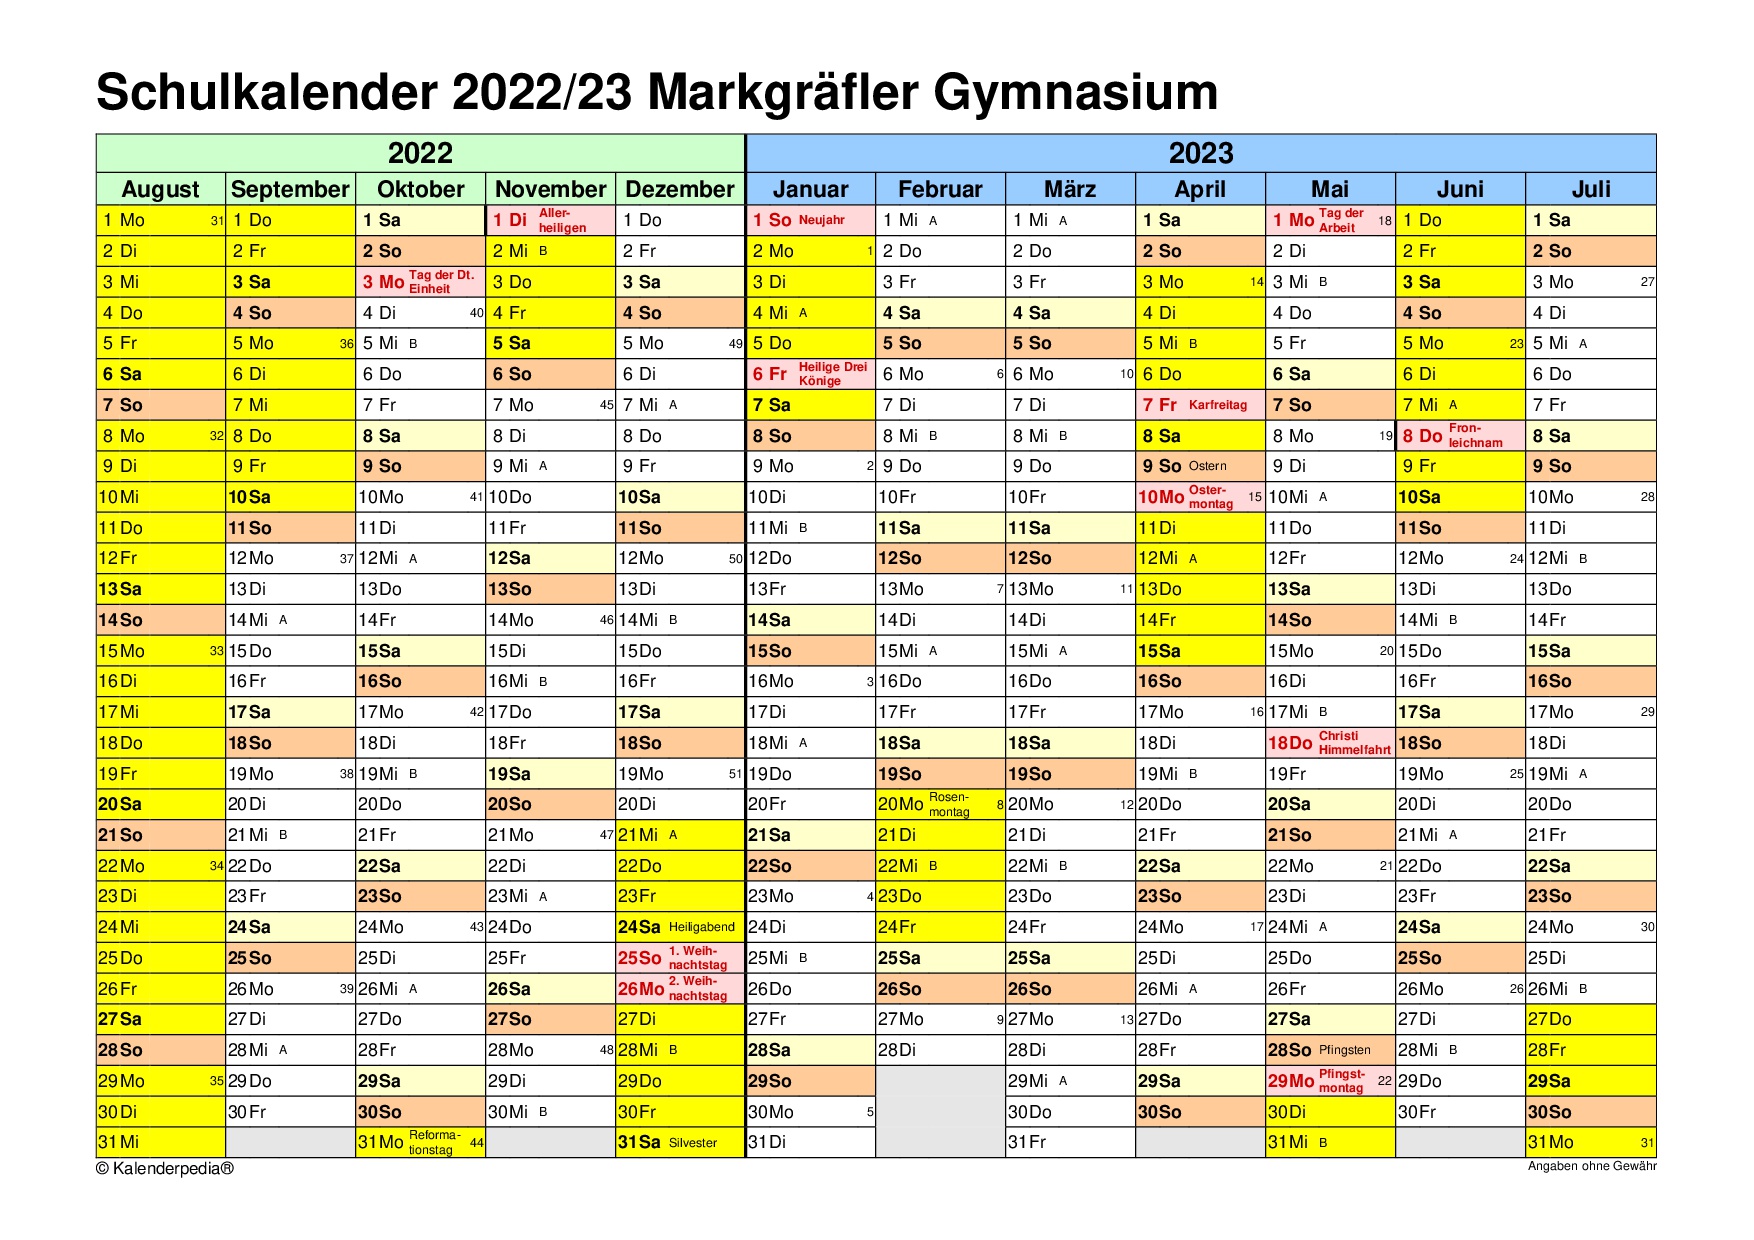 Schulkalender-2022-2023-MGM1